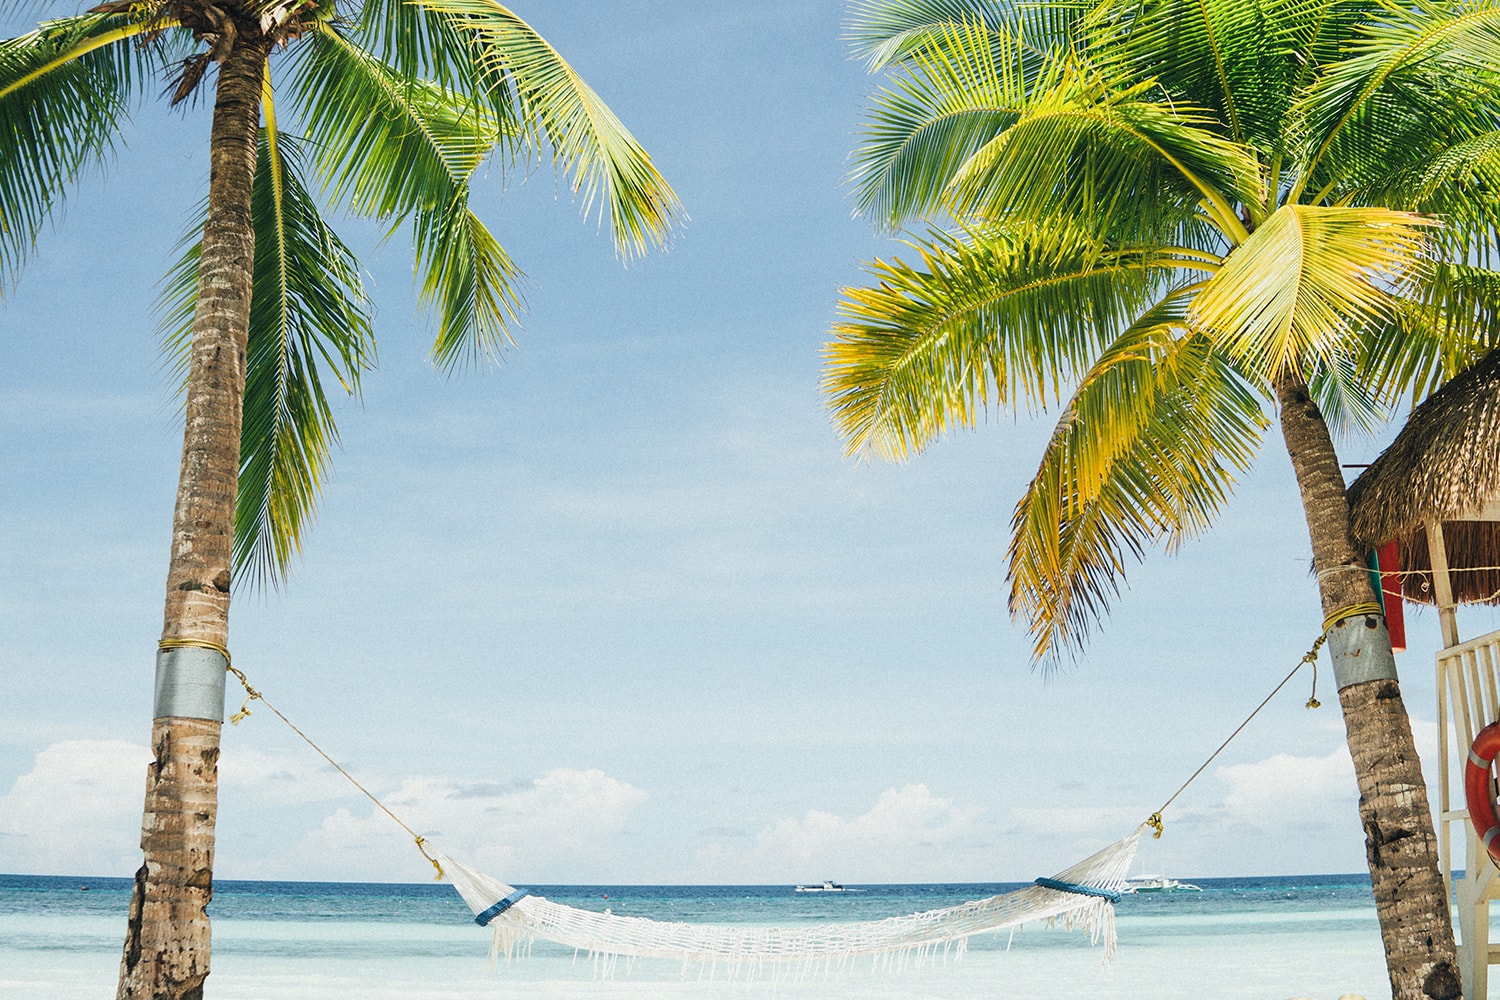 Funny Horoscopes - Palm trees and hammock on beach